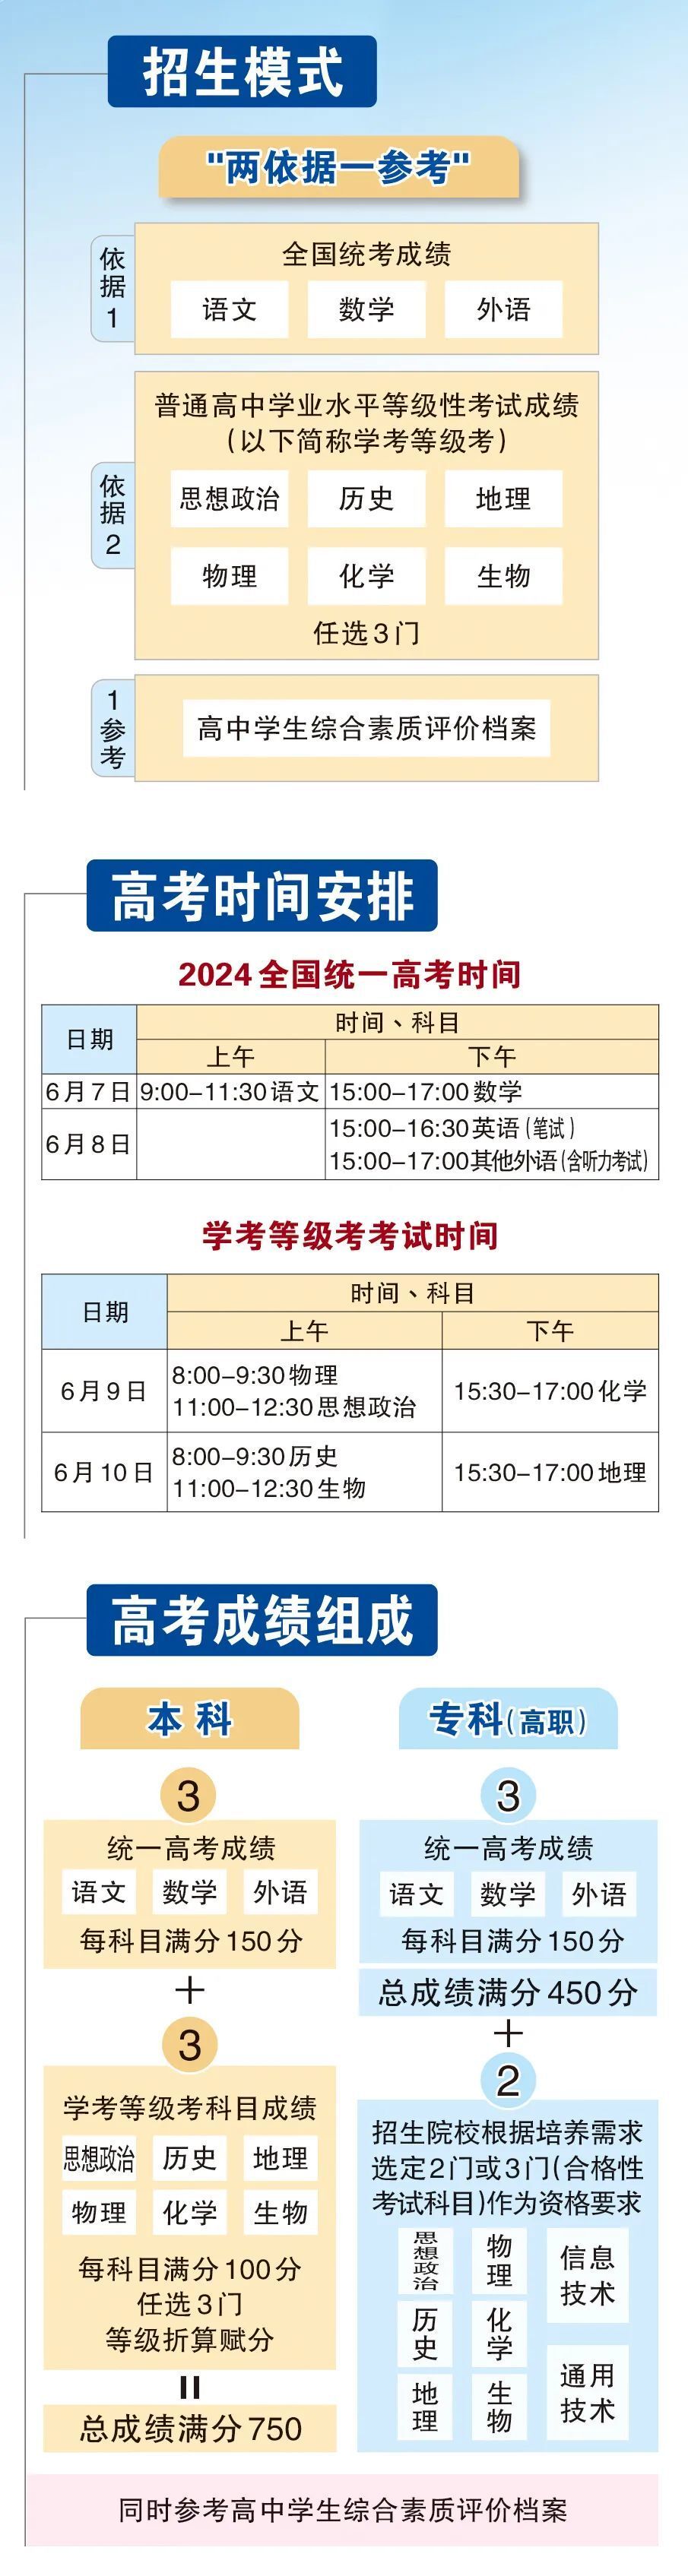 今年北京高考时间公布!考生加分条件